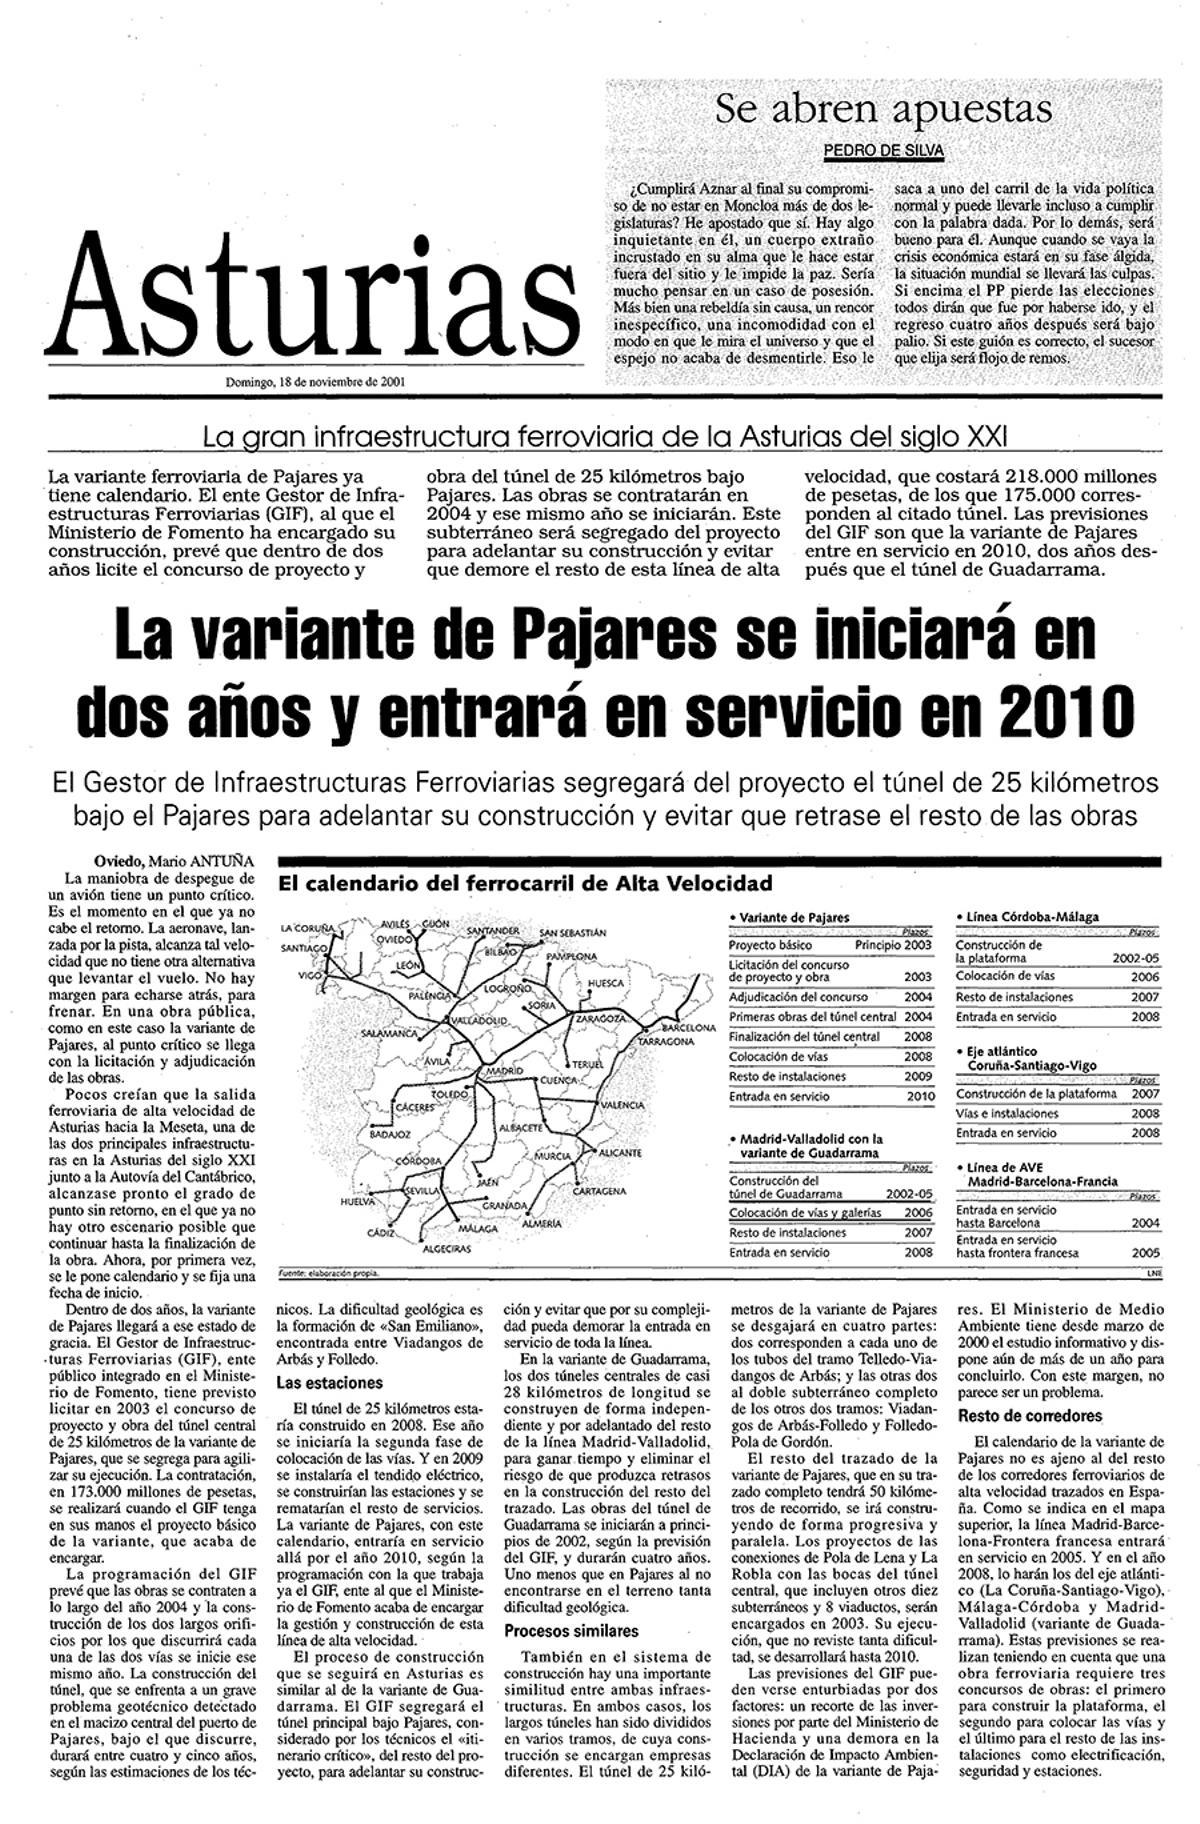 Las páginas de LA NUEVA ESPAÑA que recogían la información sobre el primer presupuesto y calendario de la variante de Pajares.